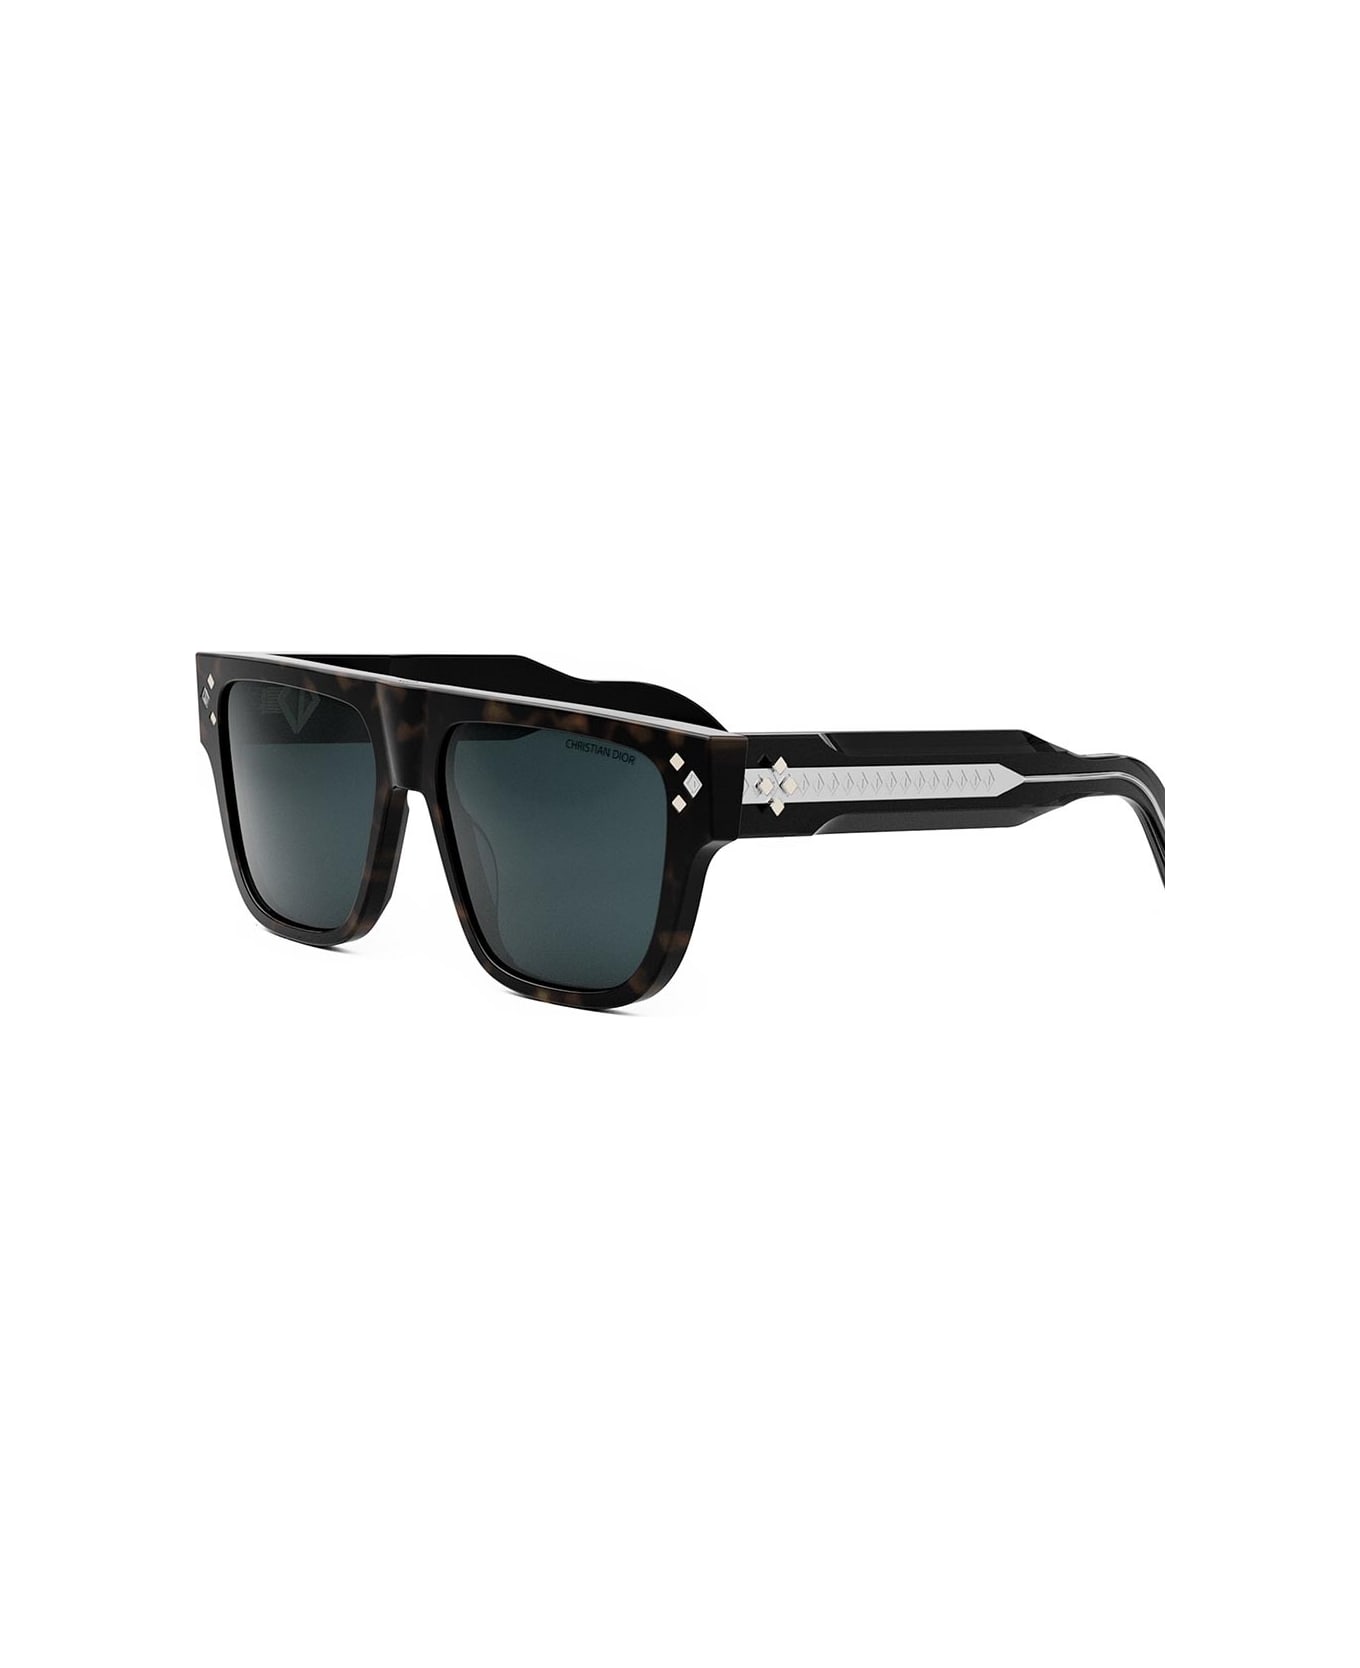 Dior Eyewear Sunglasses - Havana/Blu サングラス